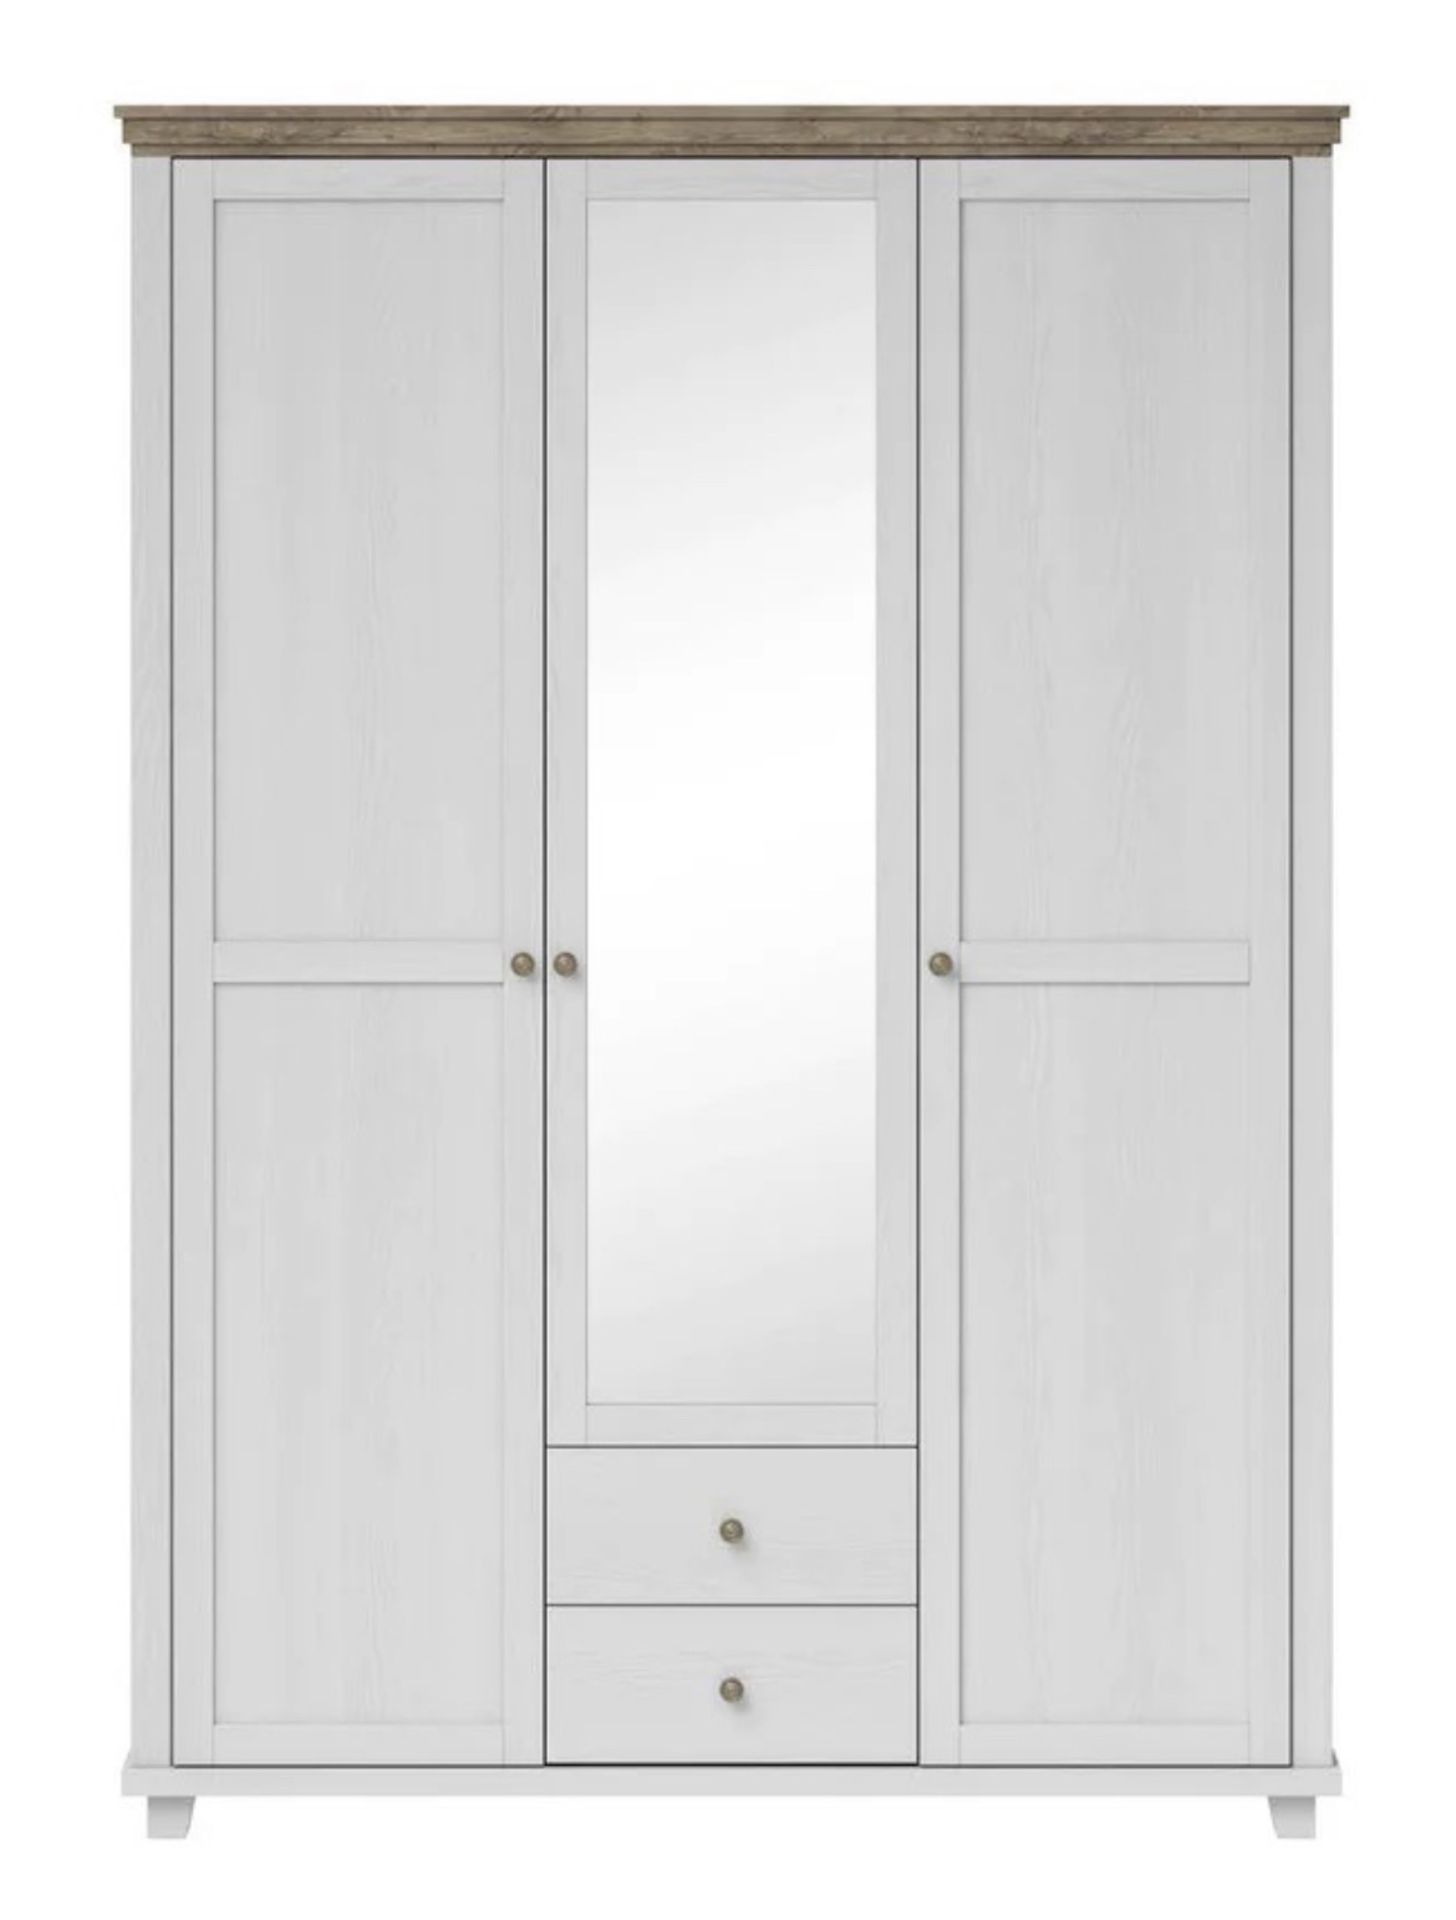 EVORA 3 DOORS HINGED WARDROBE IN WHITE/OAK - RRP £849 - Image 4 of 6